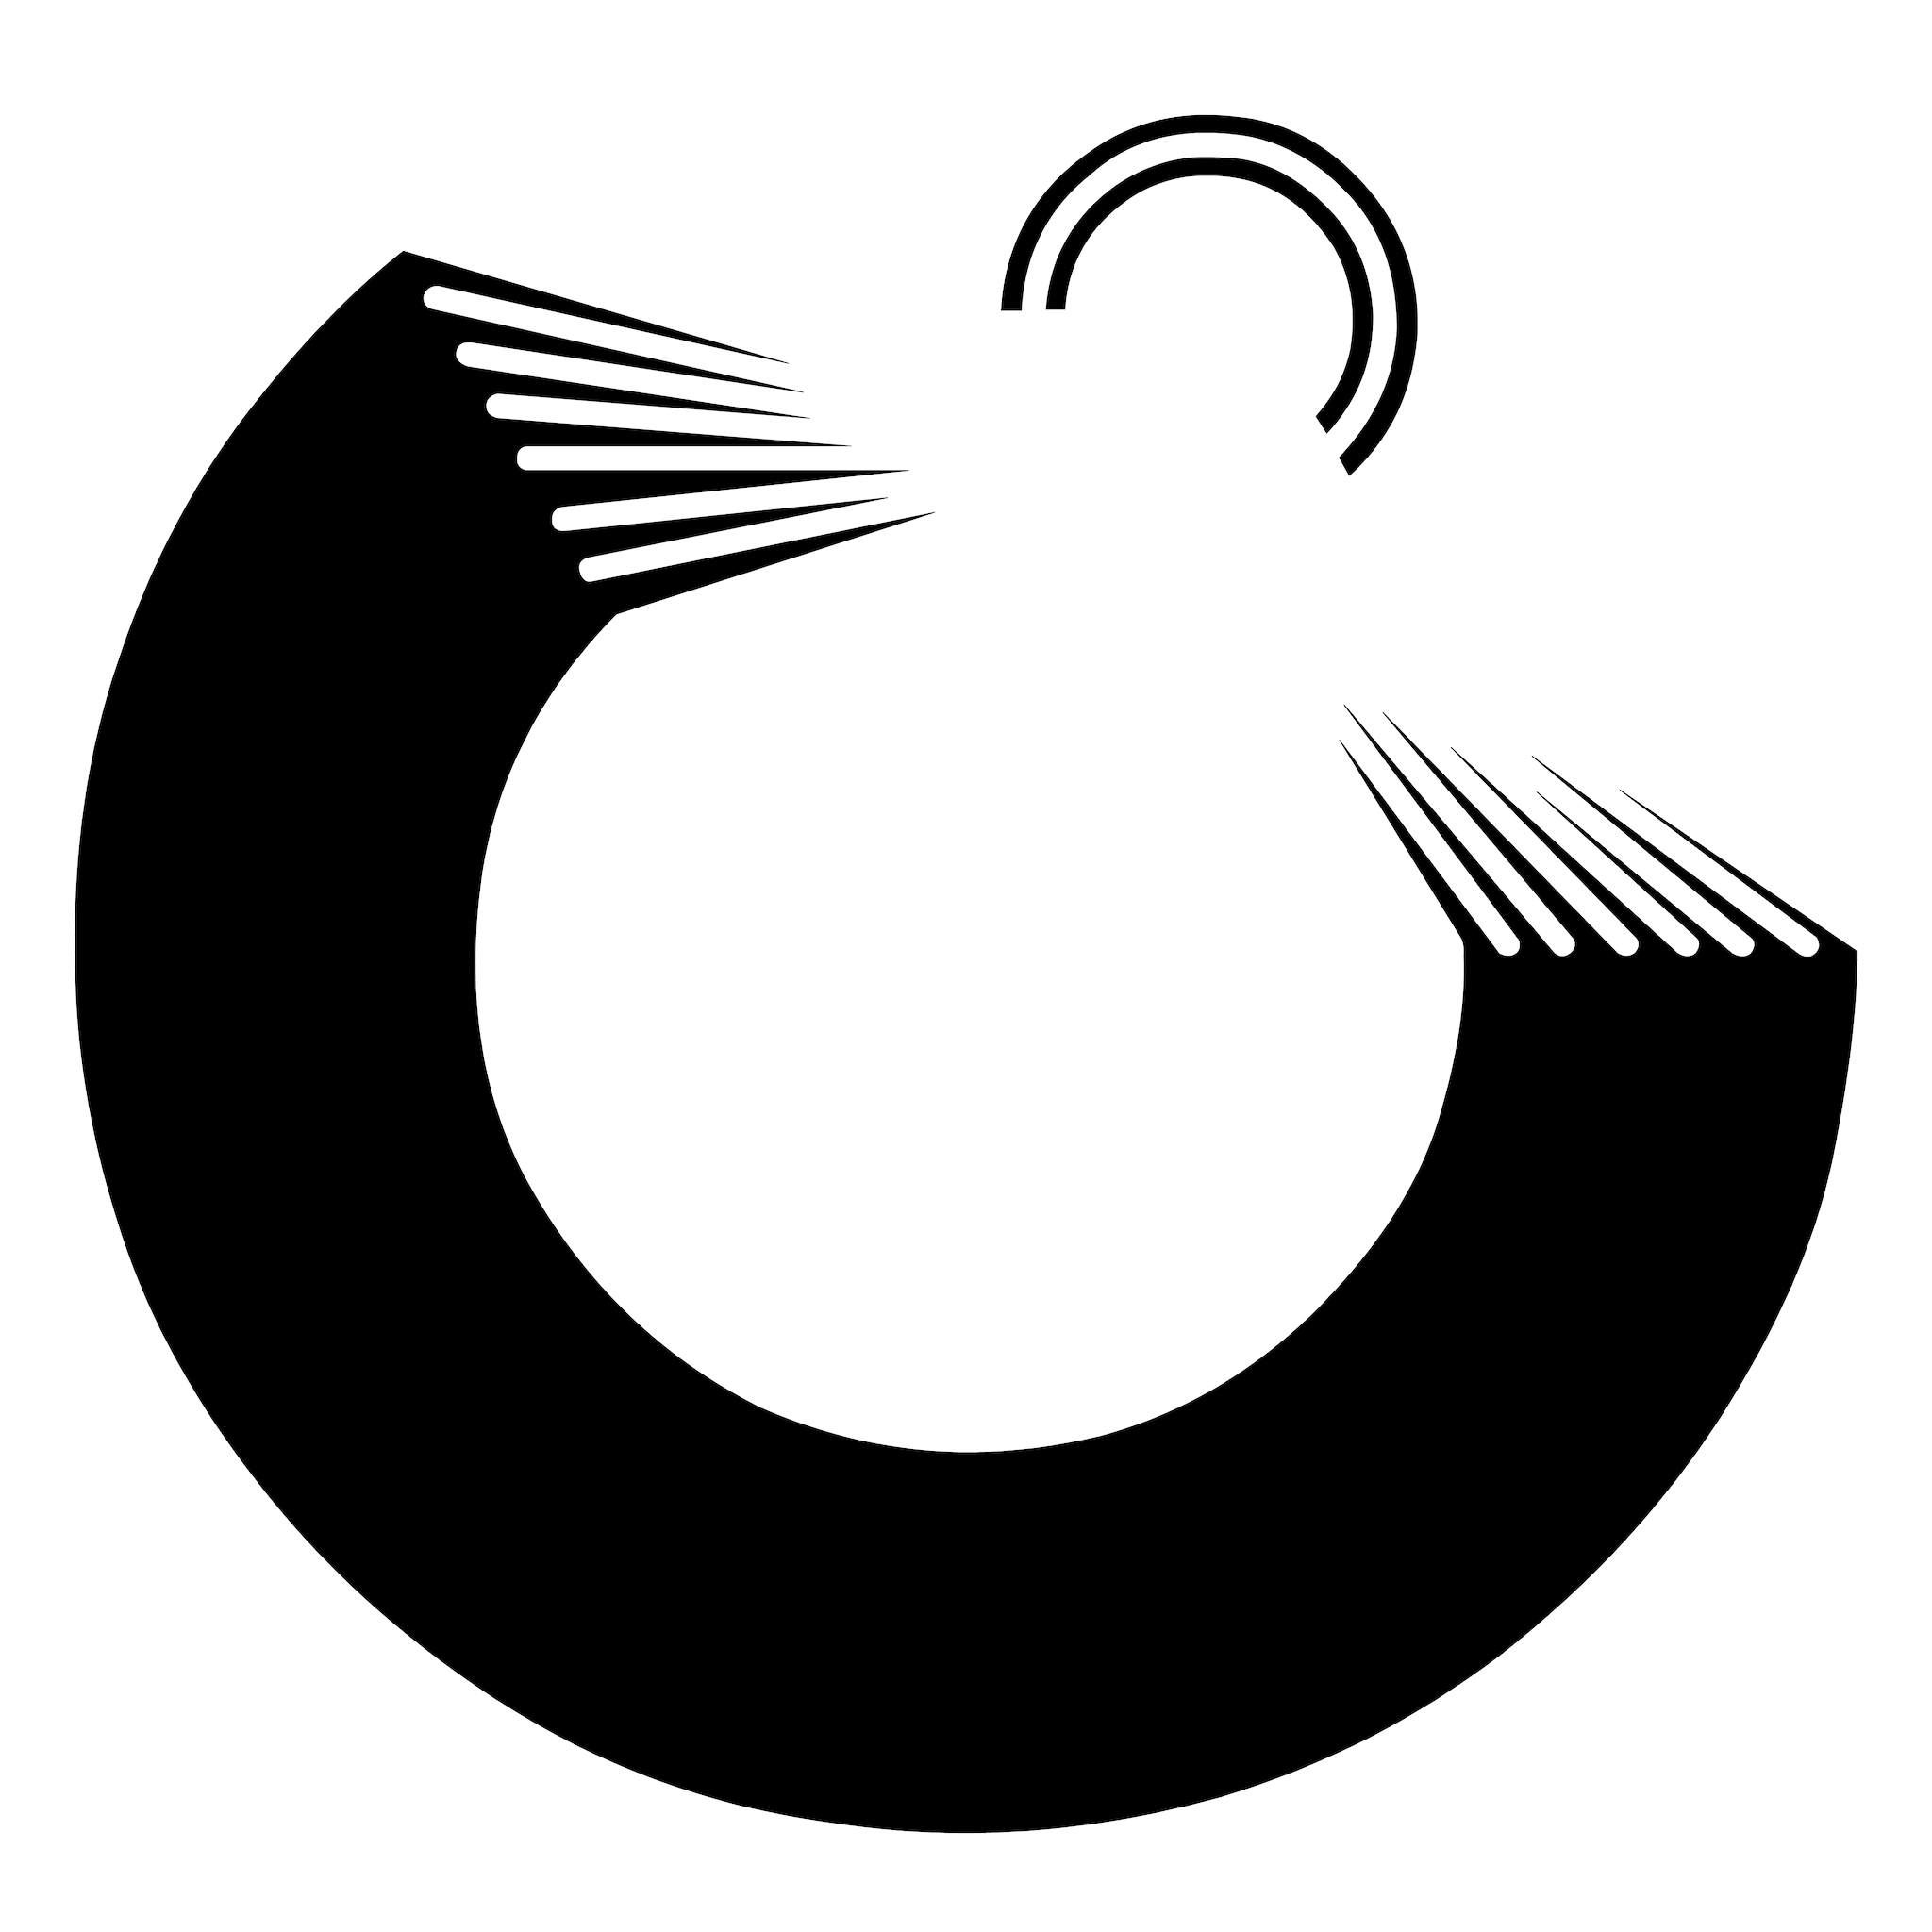 Port Fish logo